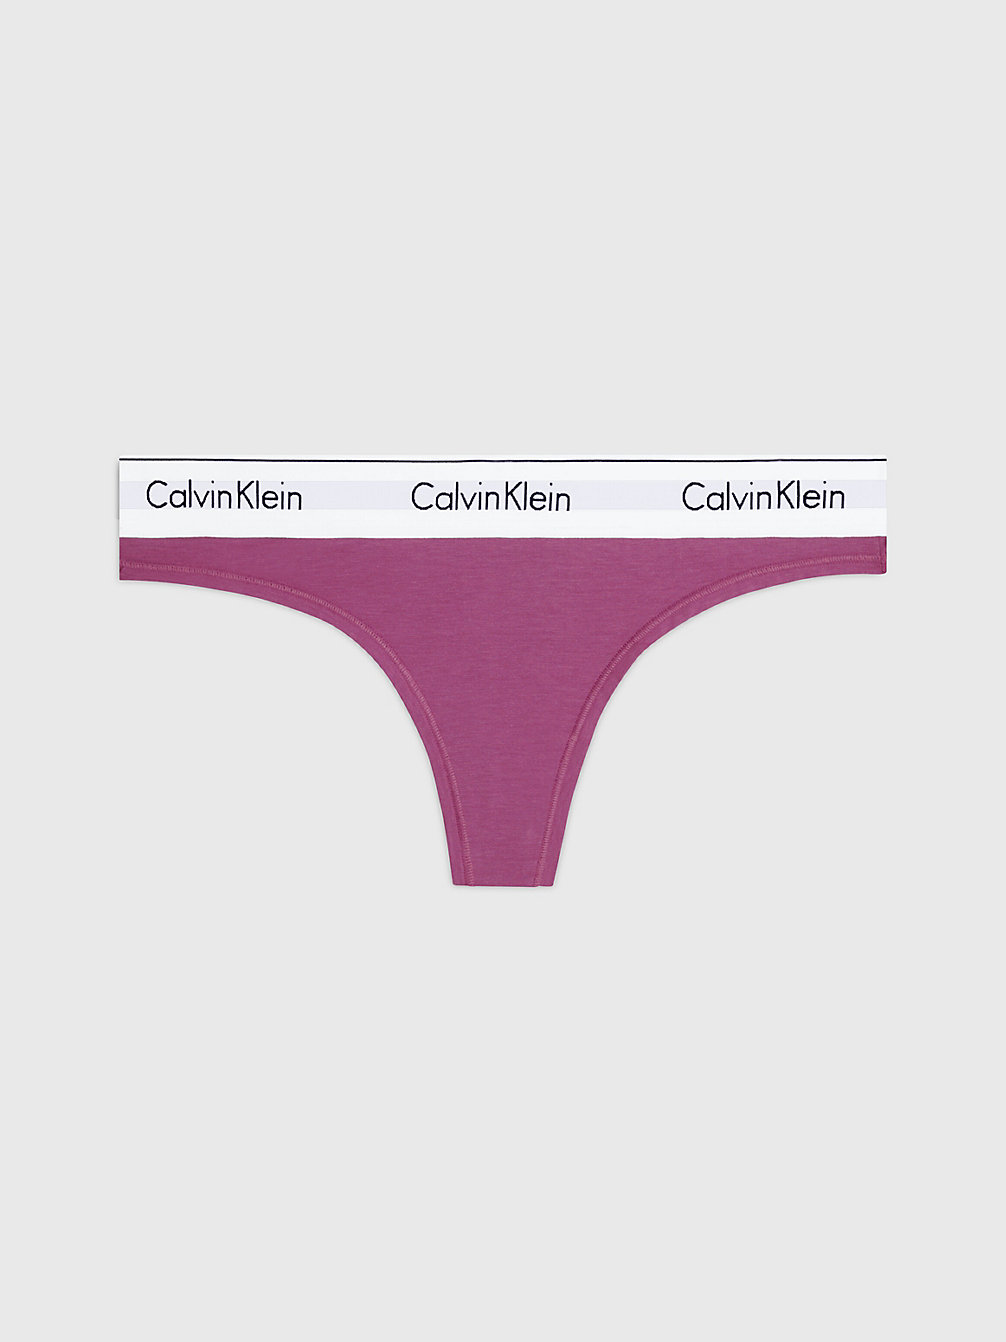 AMETHYST > Stringi - Modern Cotton > undefined Kobiety - Calvin Klein